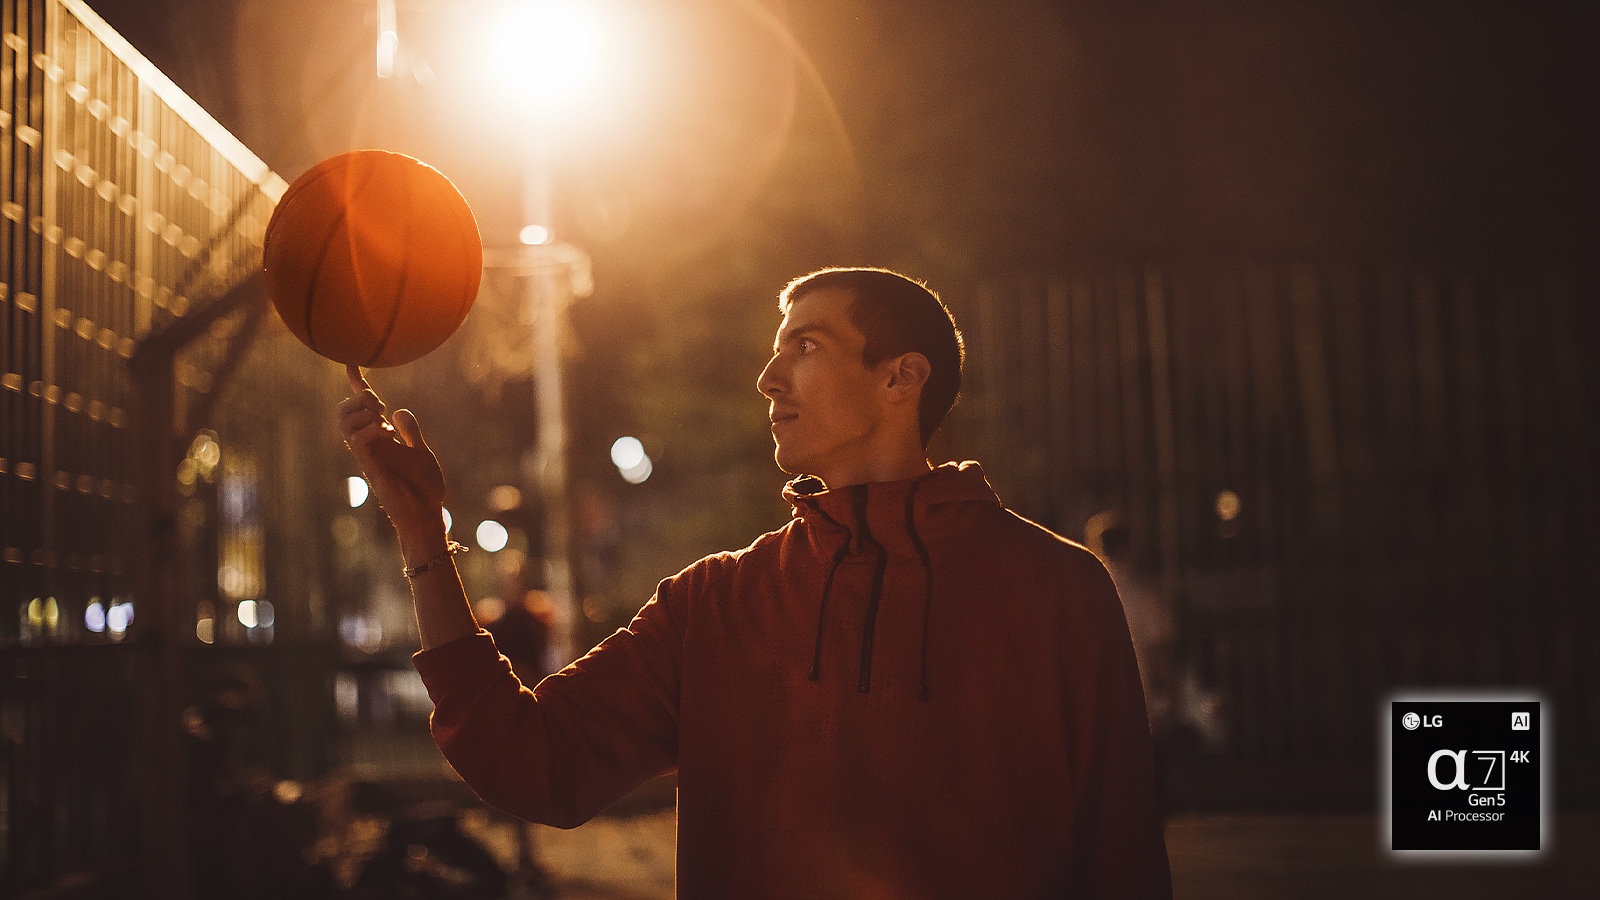 Mężczyzna na boisku do koszykówki w nocy kręci piłką na palcu 